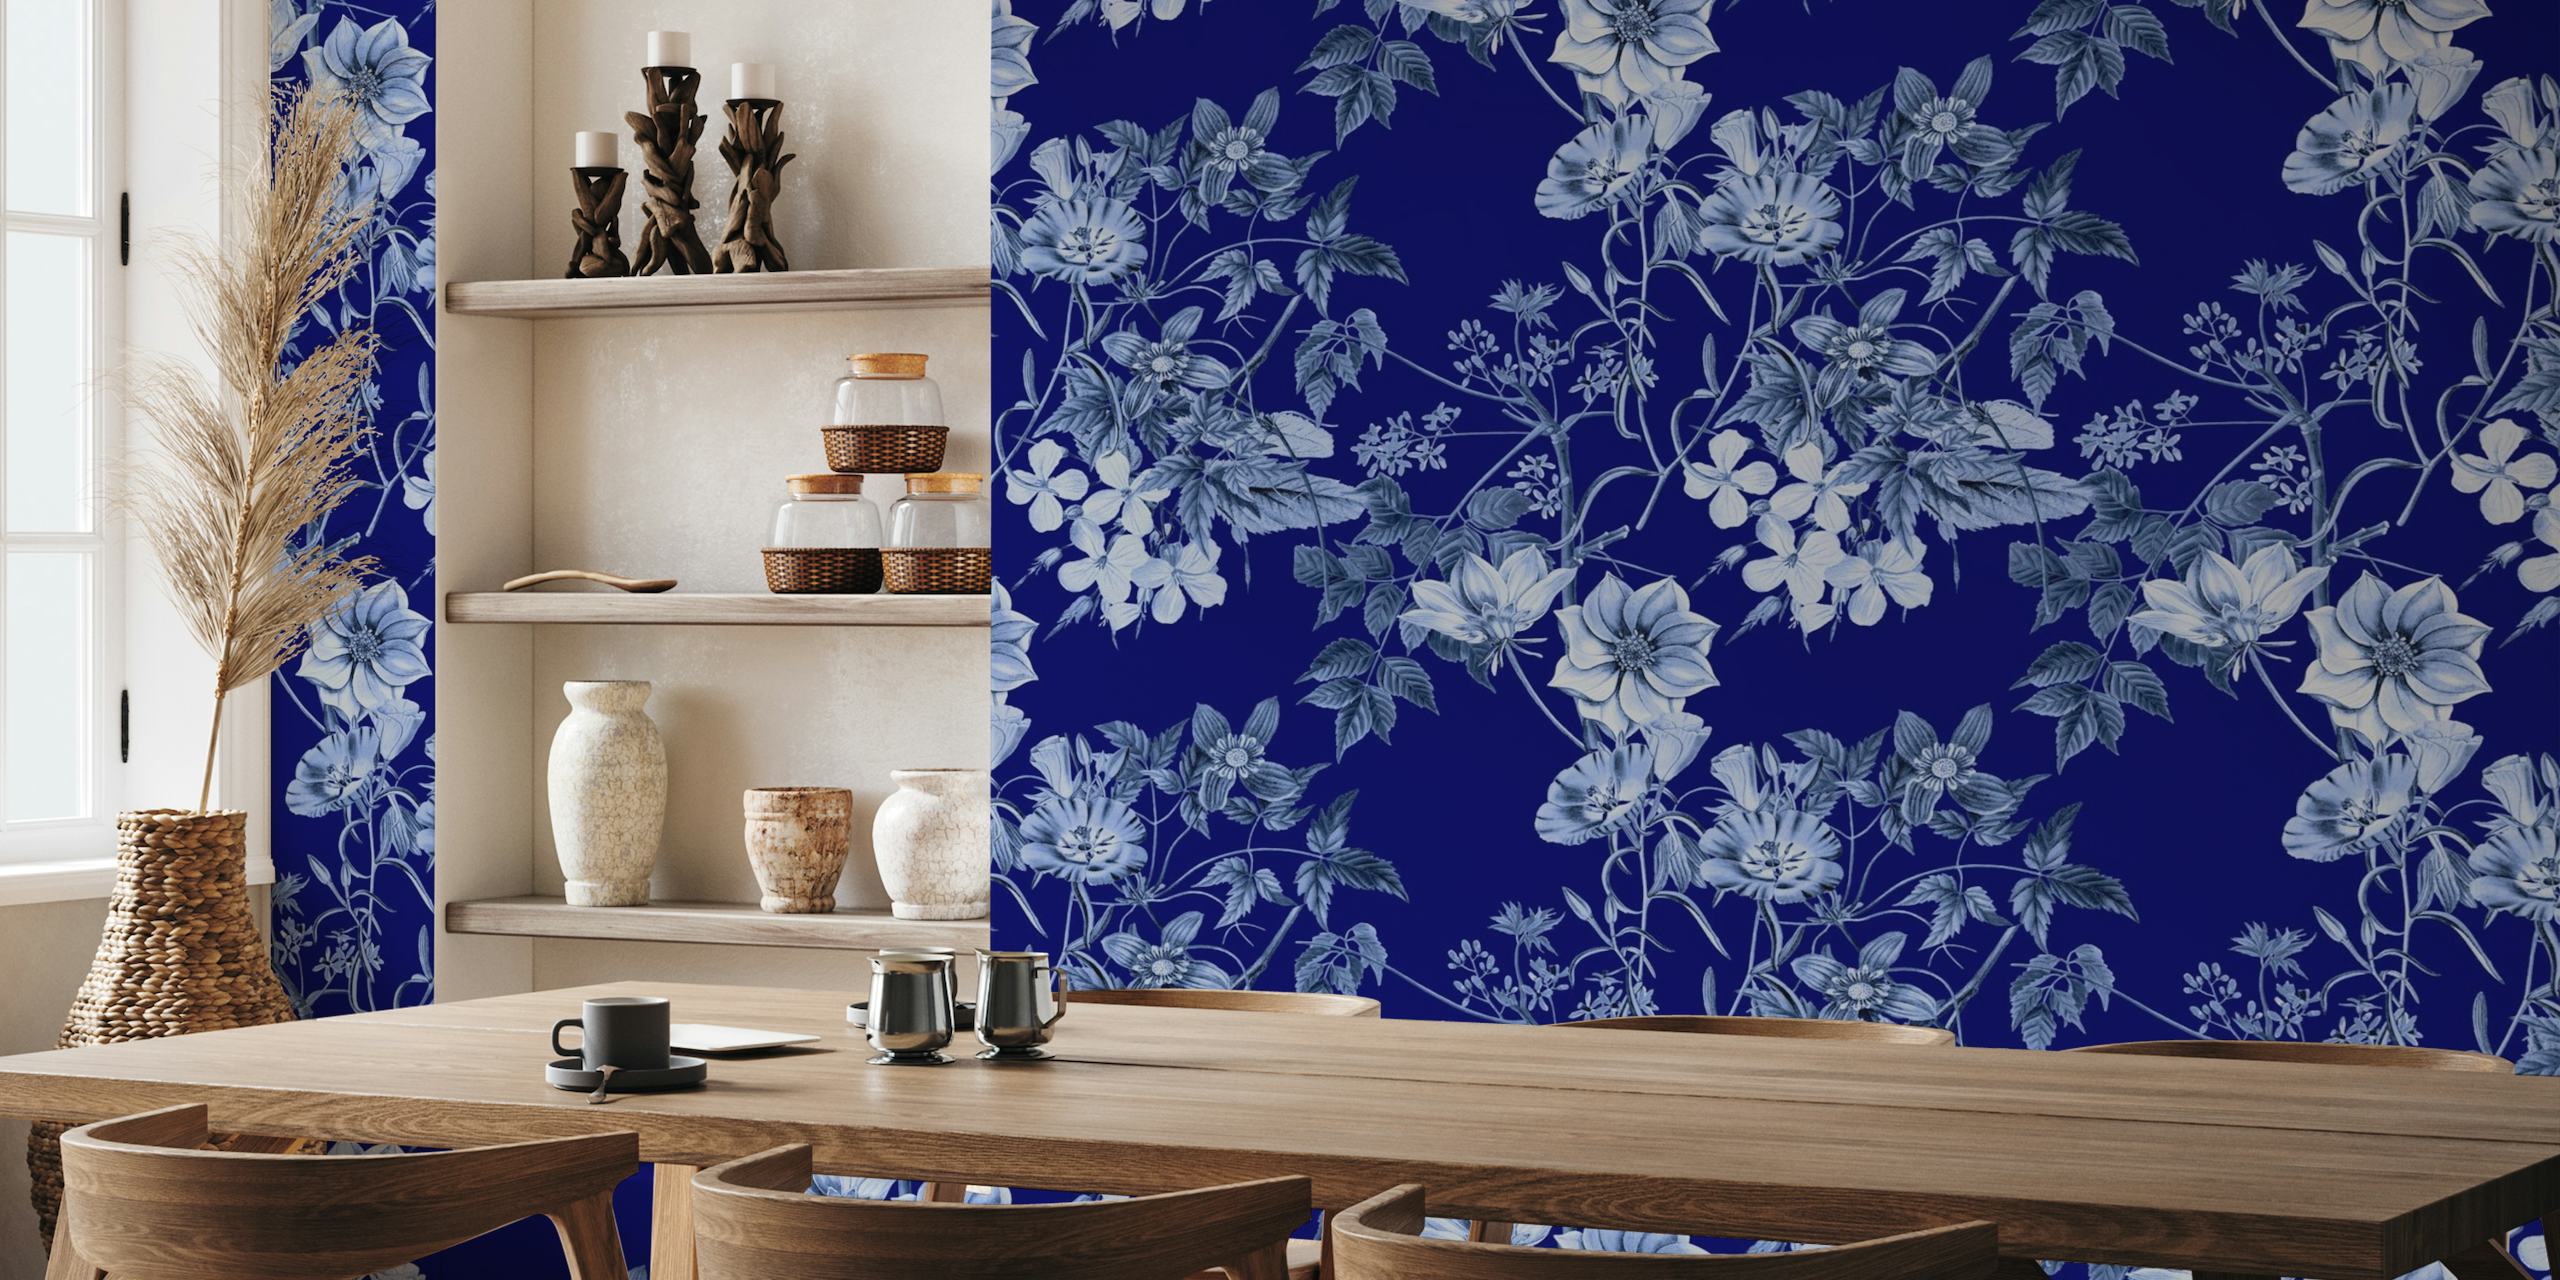 Diepblauwe bloemenmuurschildering met ingewikkeld bloemenpatroonontwerp